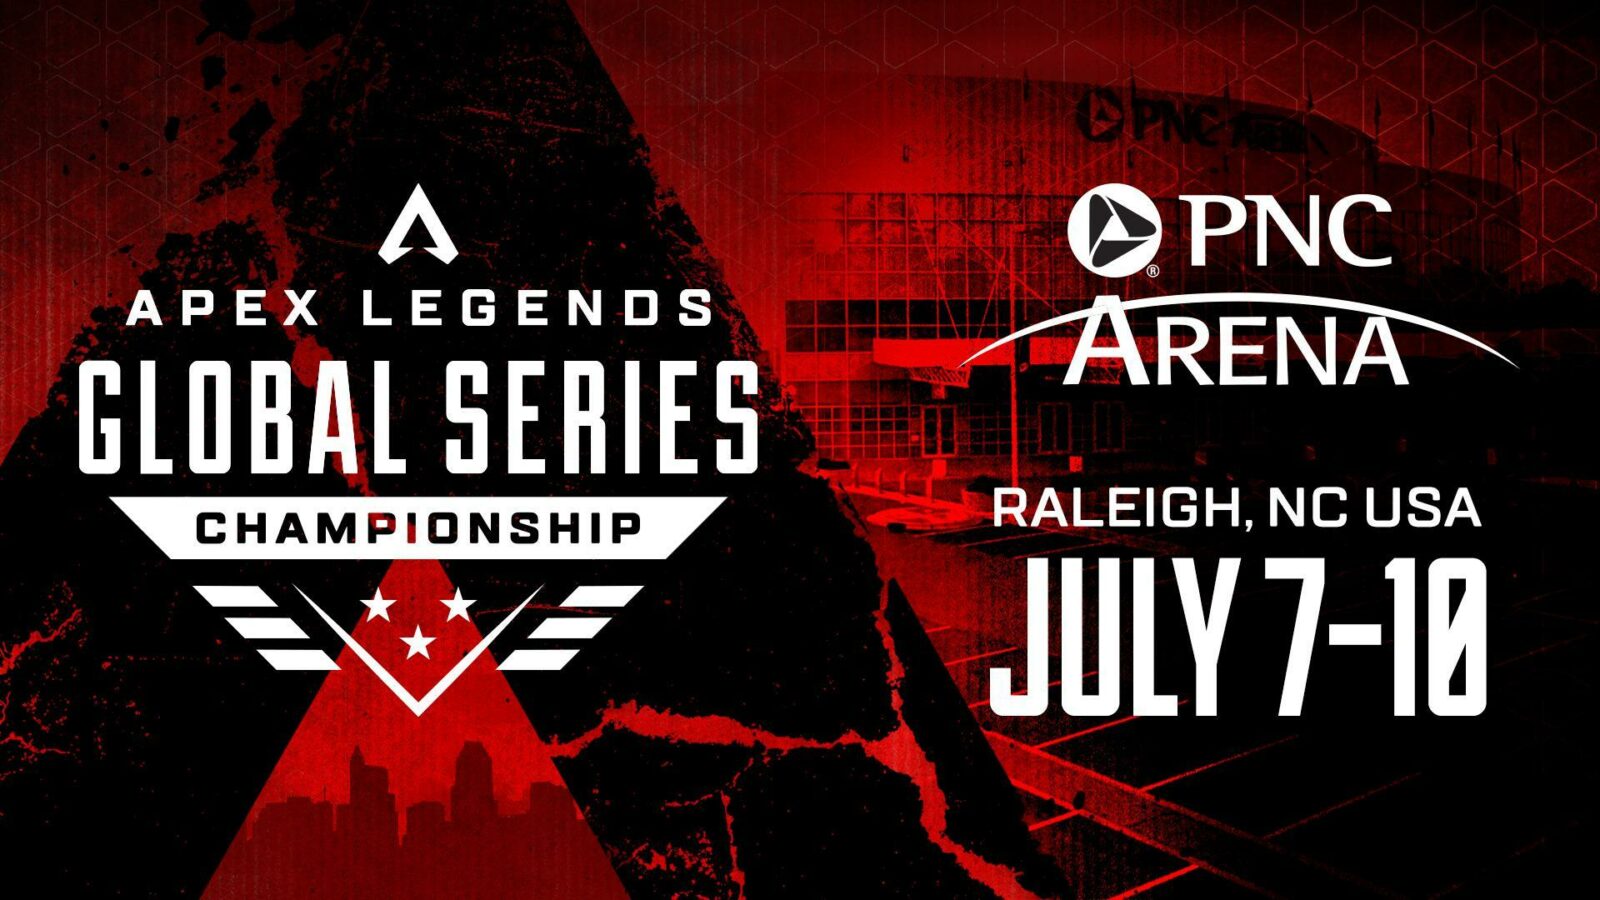 Dal 7 luglio il via al campionato Apex Legends Global Series Year 2, dal North Carolina thumbnail